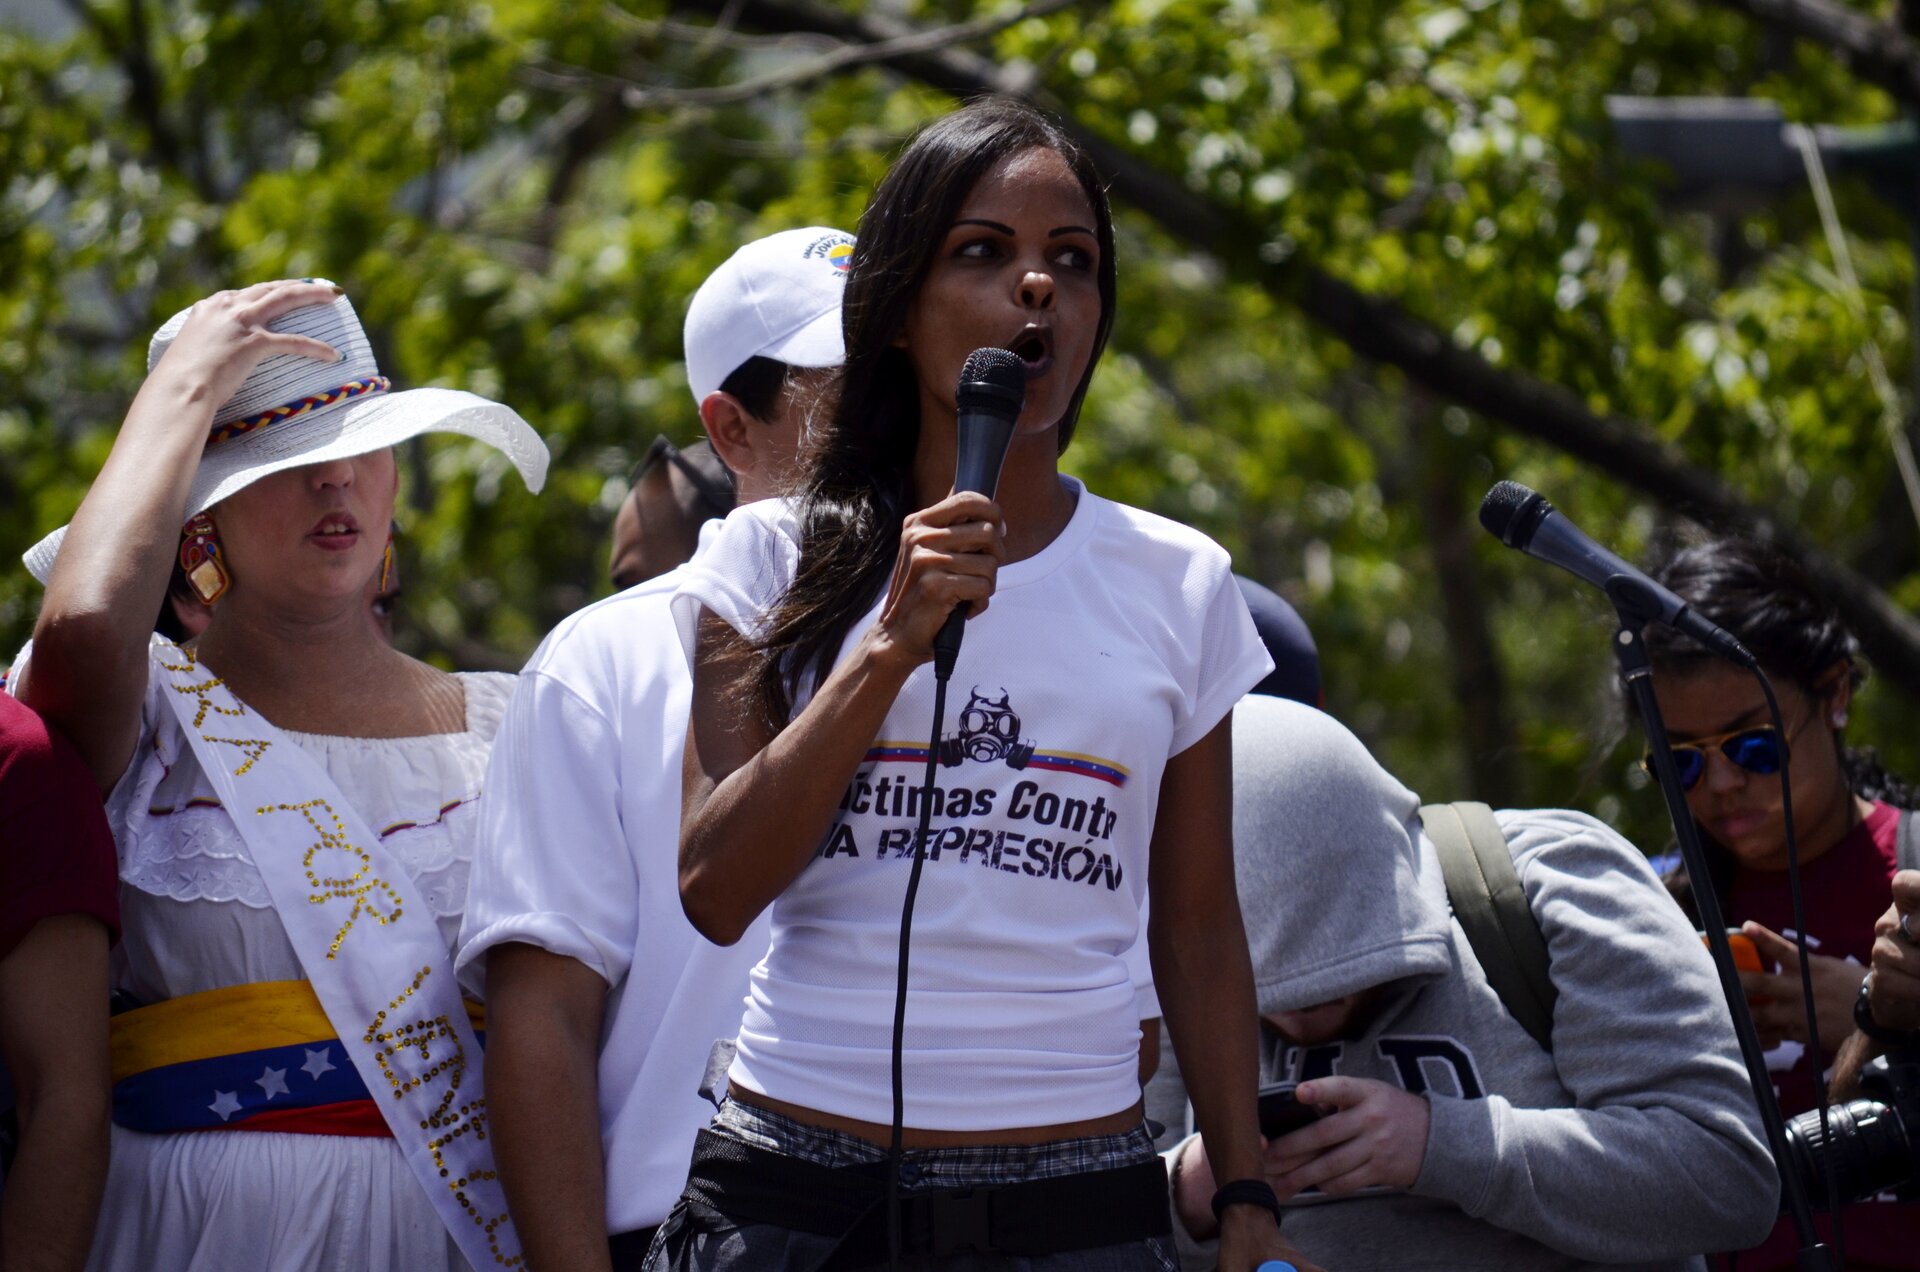 Na zdjęciu grupa ludzi, o różnych kolorach skóry, kobieta trzyma mikrofon.